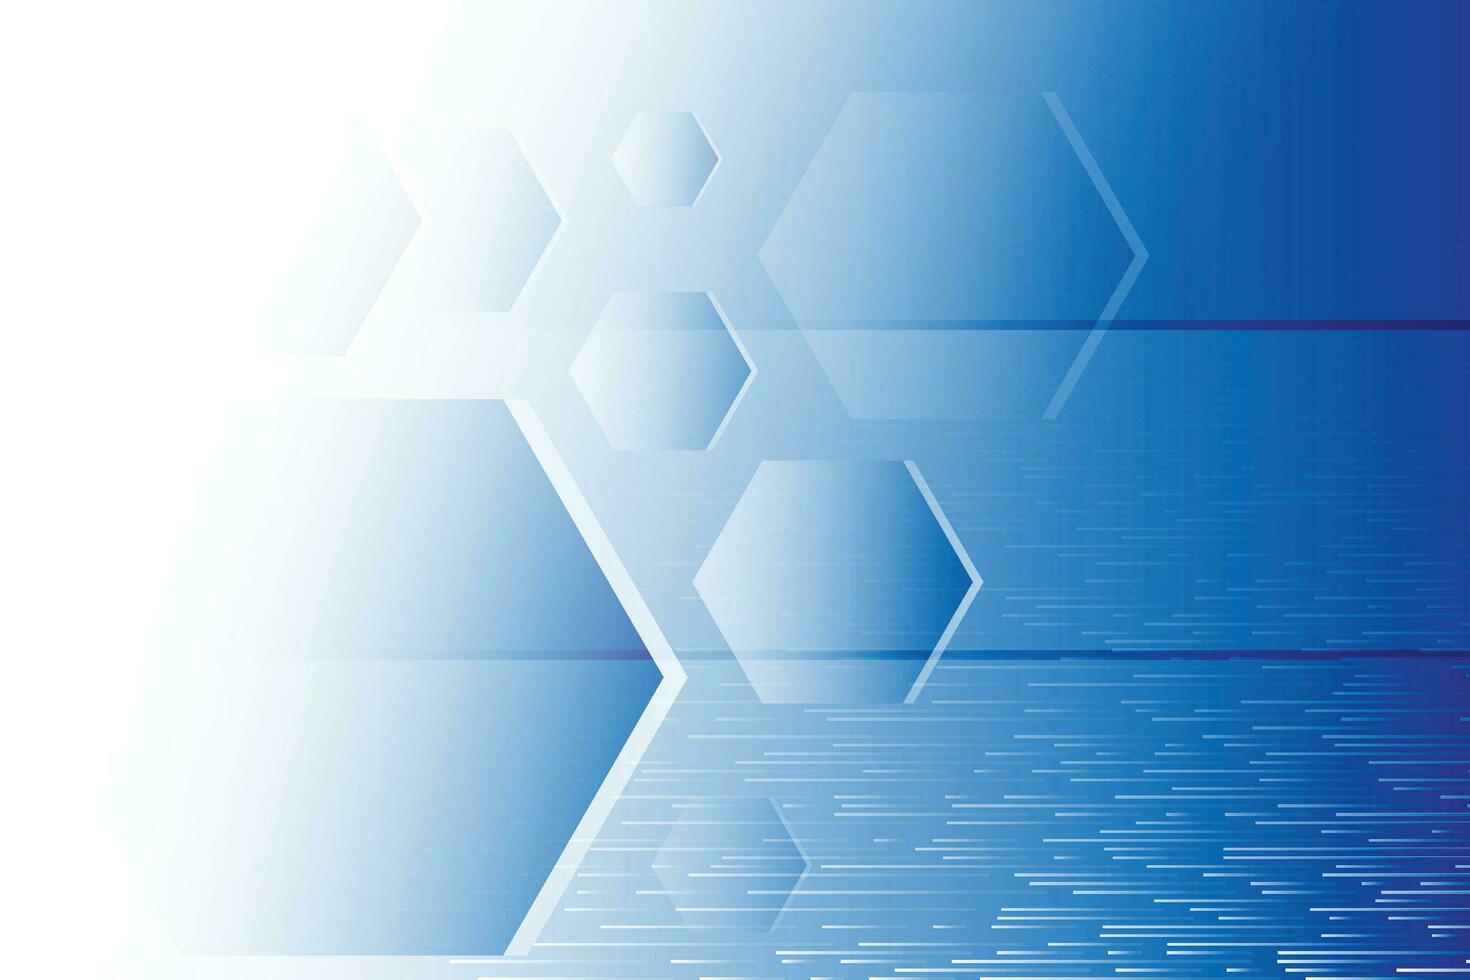 abstrait bleu et blanc La technologie Contexte avec hexagonal forme. vecteur illustration.